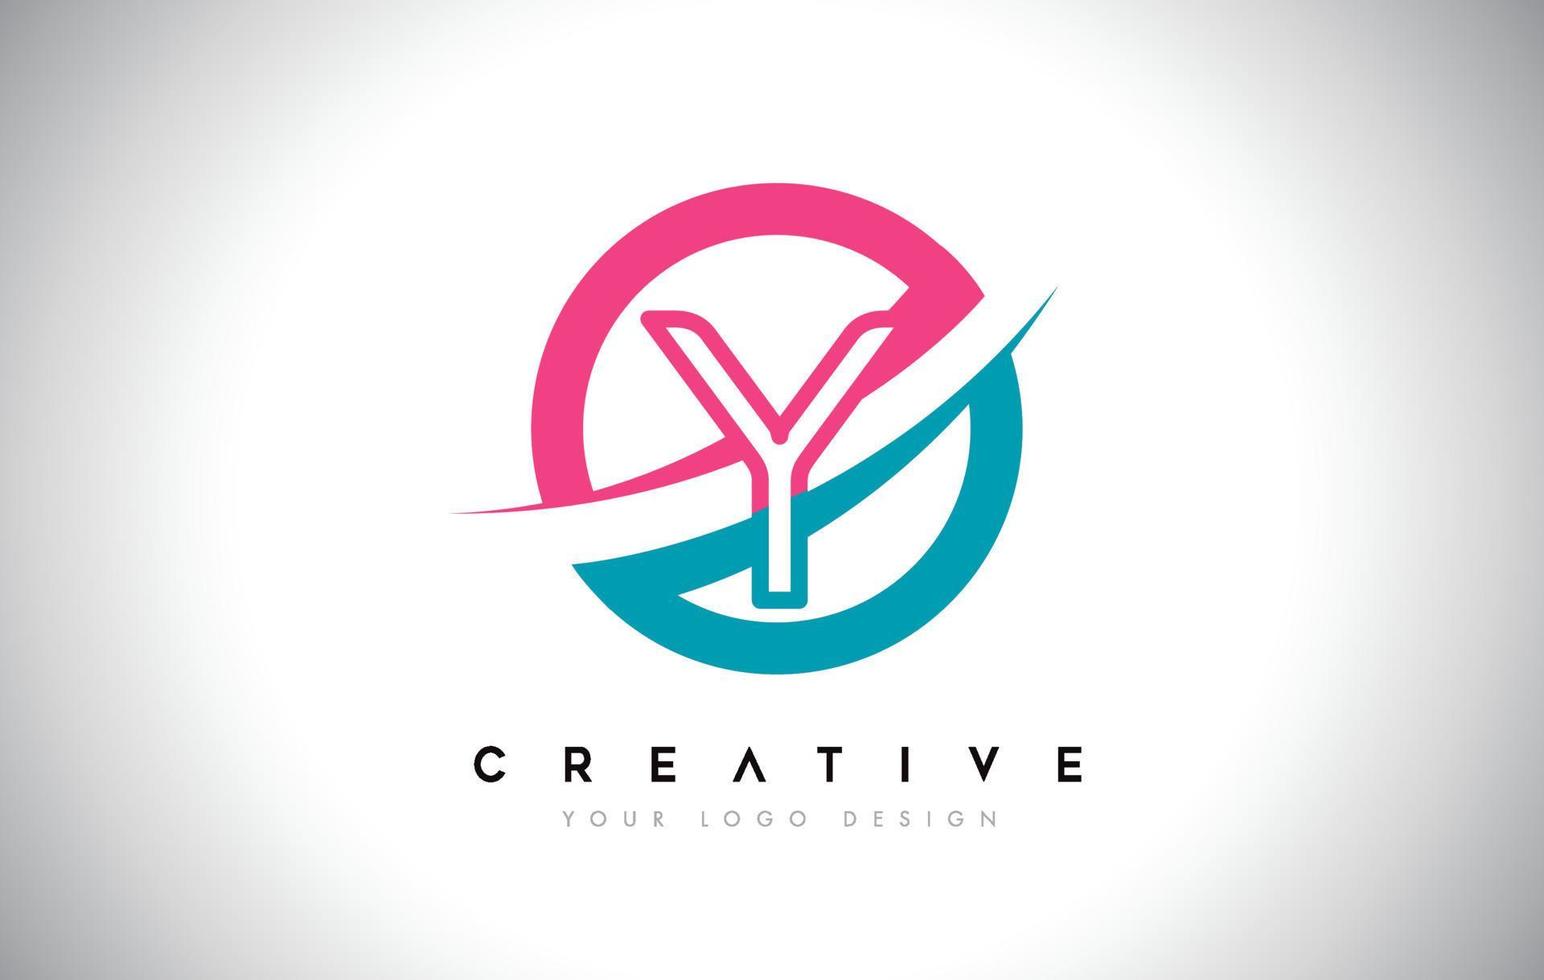 icône du logo de conception de lettre y avec vecteur de conception cercle et swoosh et couleur rose bleu.